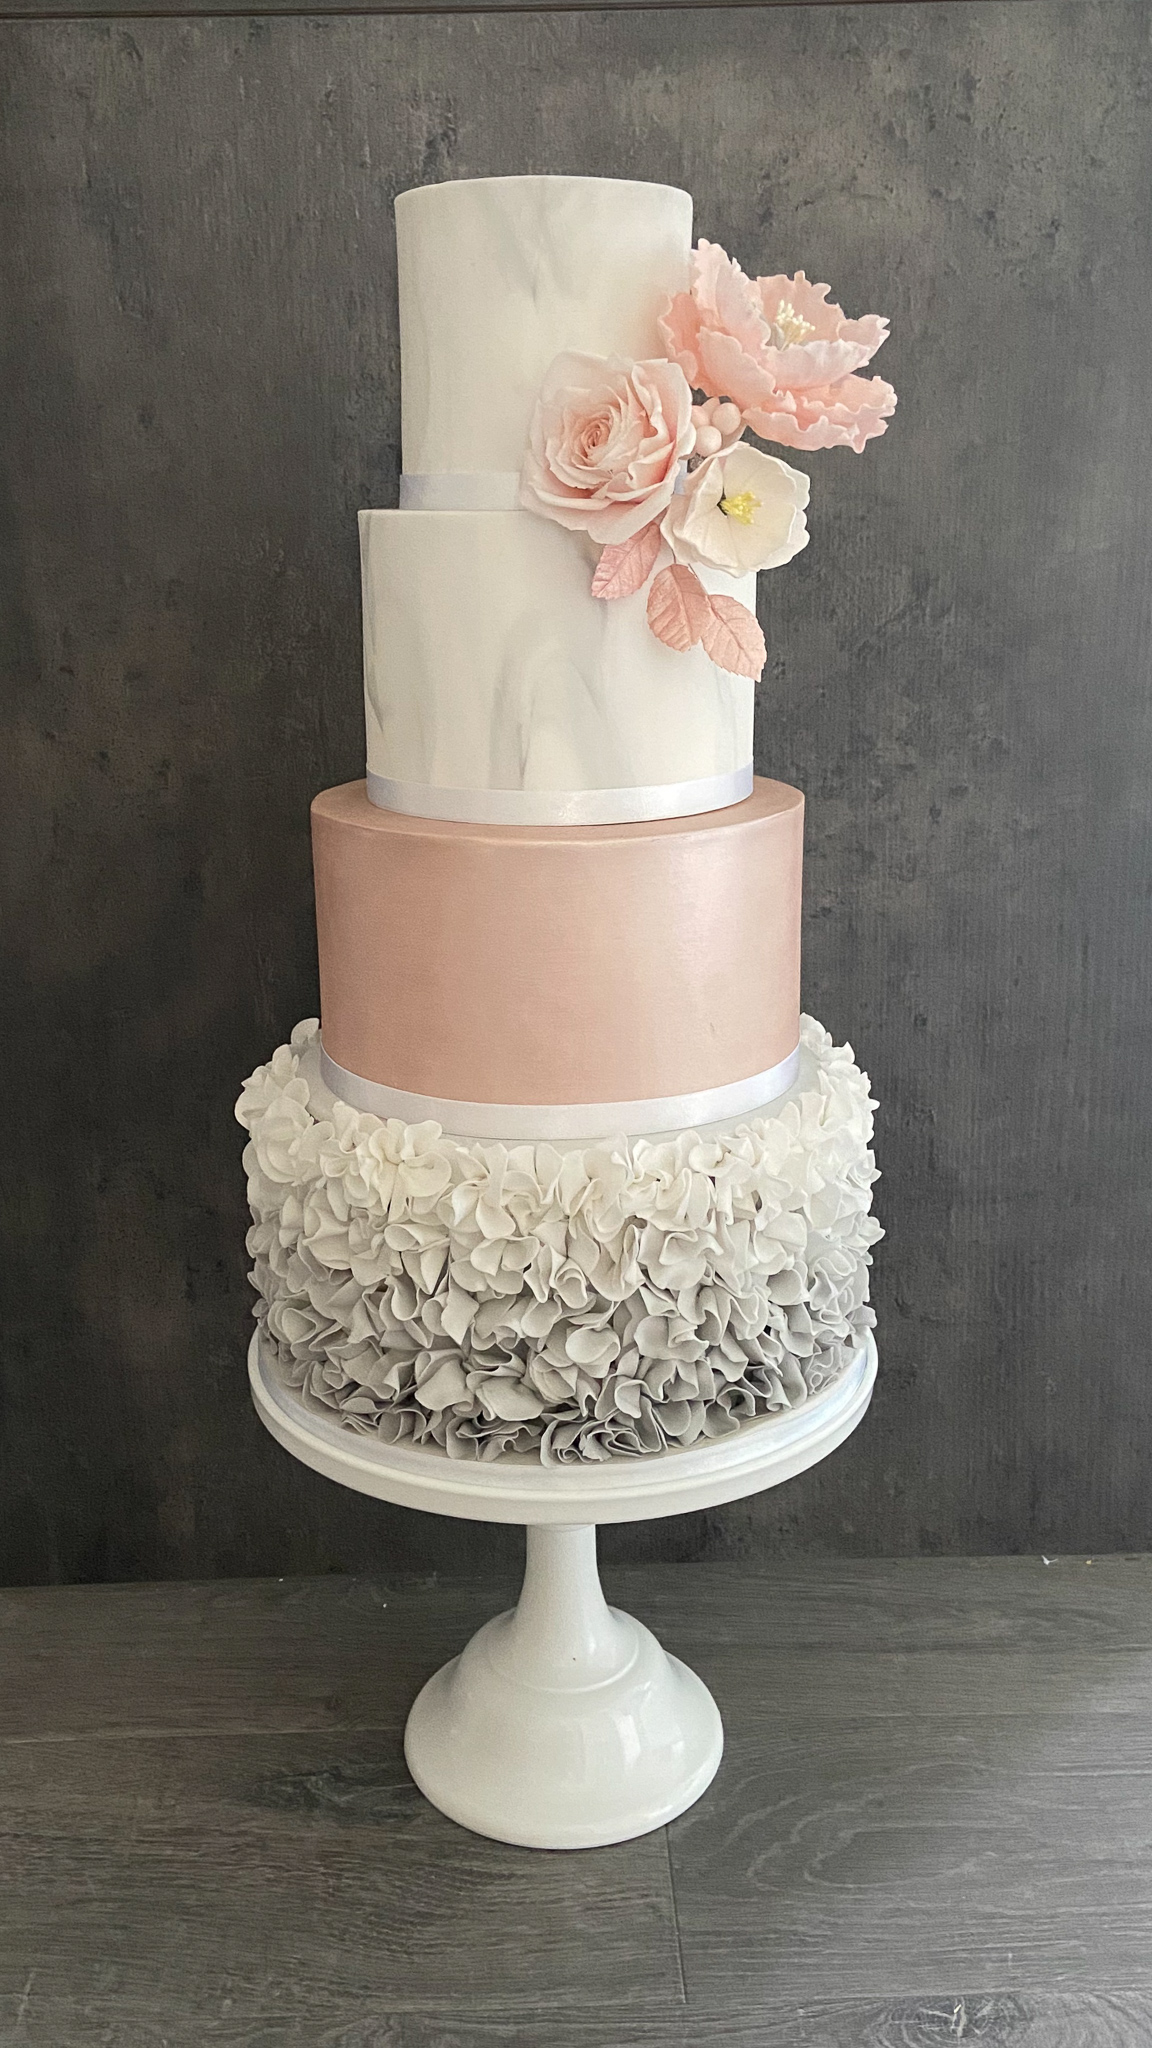 Purple Ruffle Wedding Cake - Decorated Cake by Carol - CakesDecor